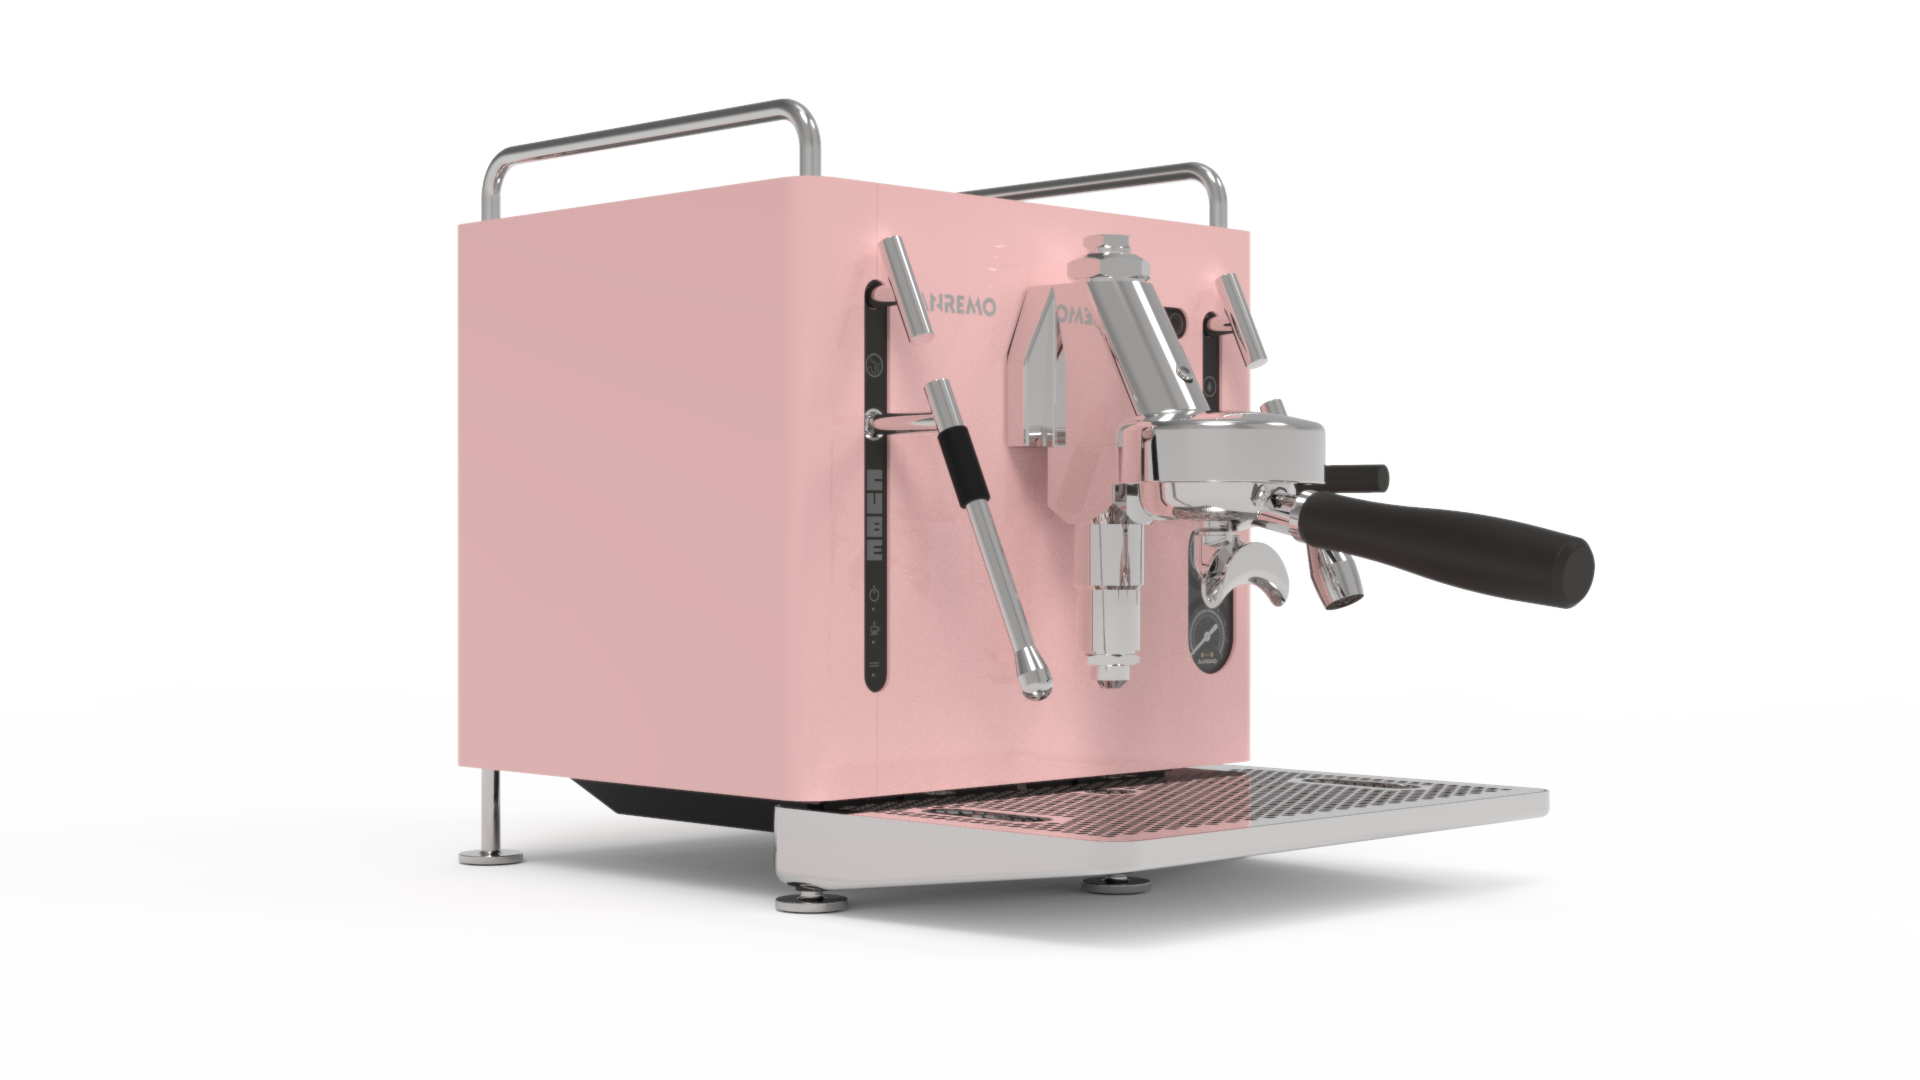 Sanremo Cube R-A Version Espresso Machine